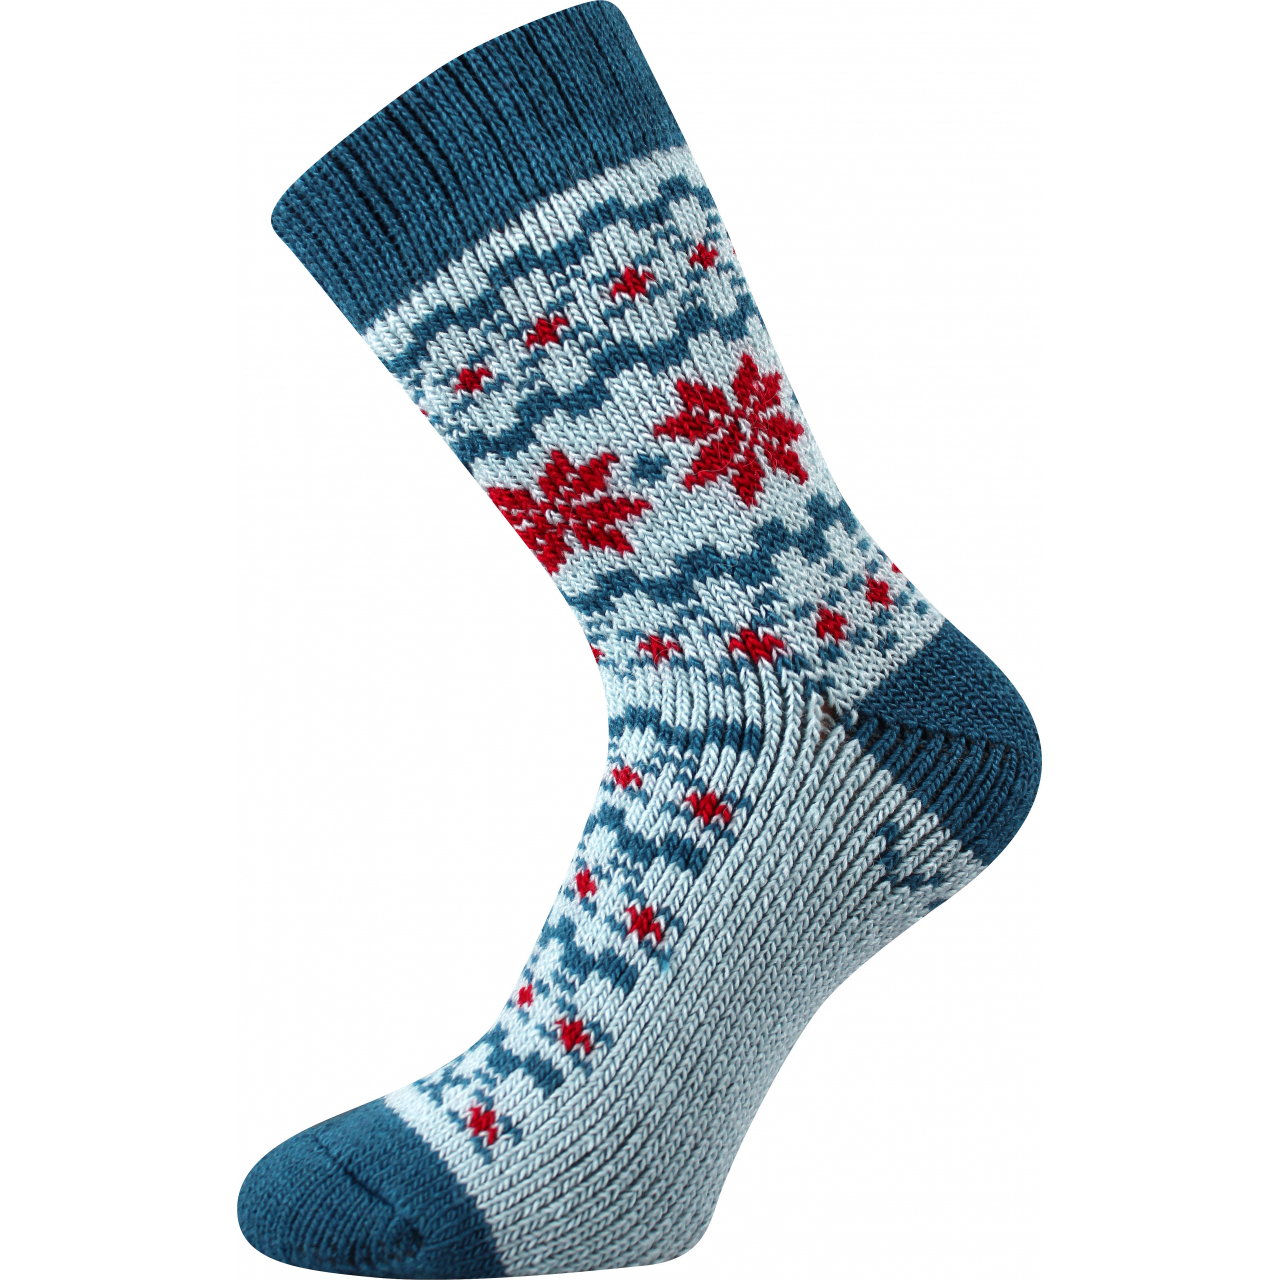 Ponožky unisex zimní Voxx Trondelag - světle modré, 35-38